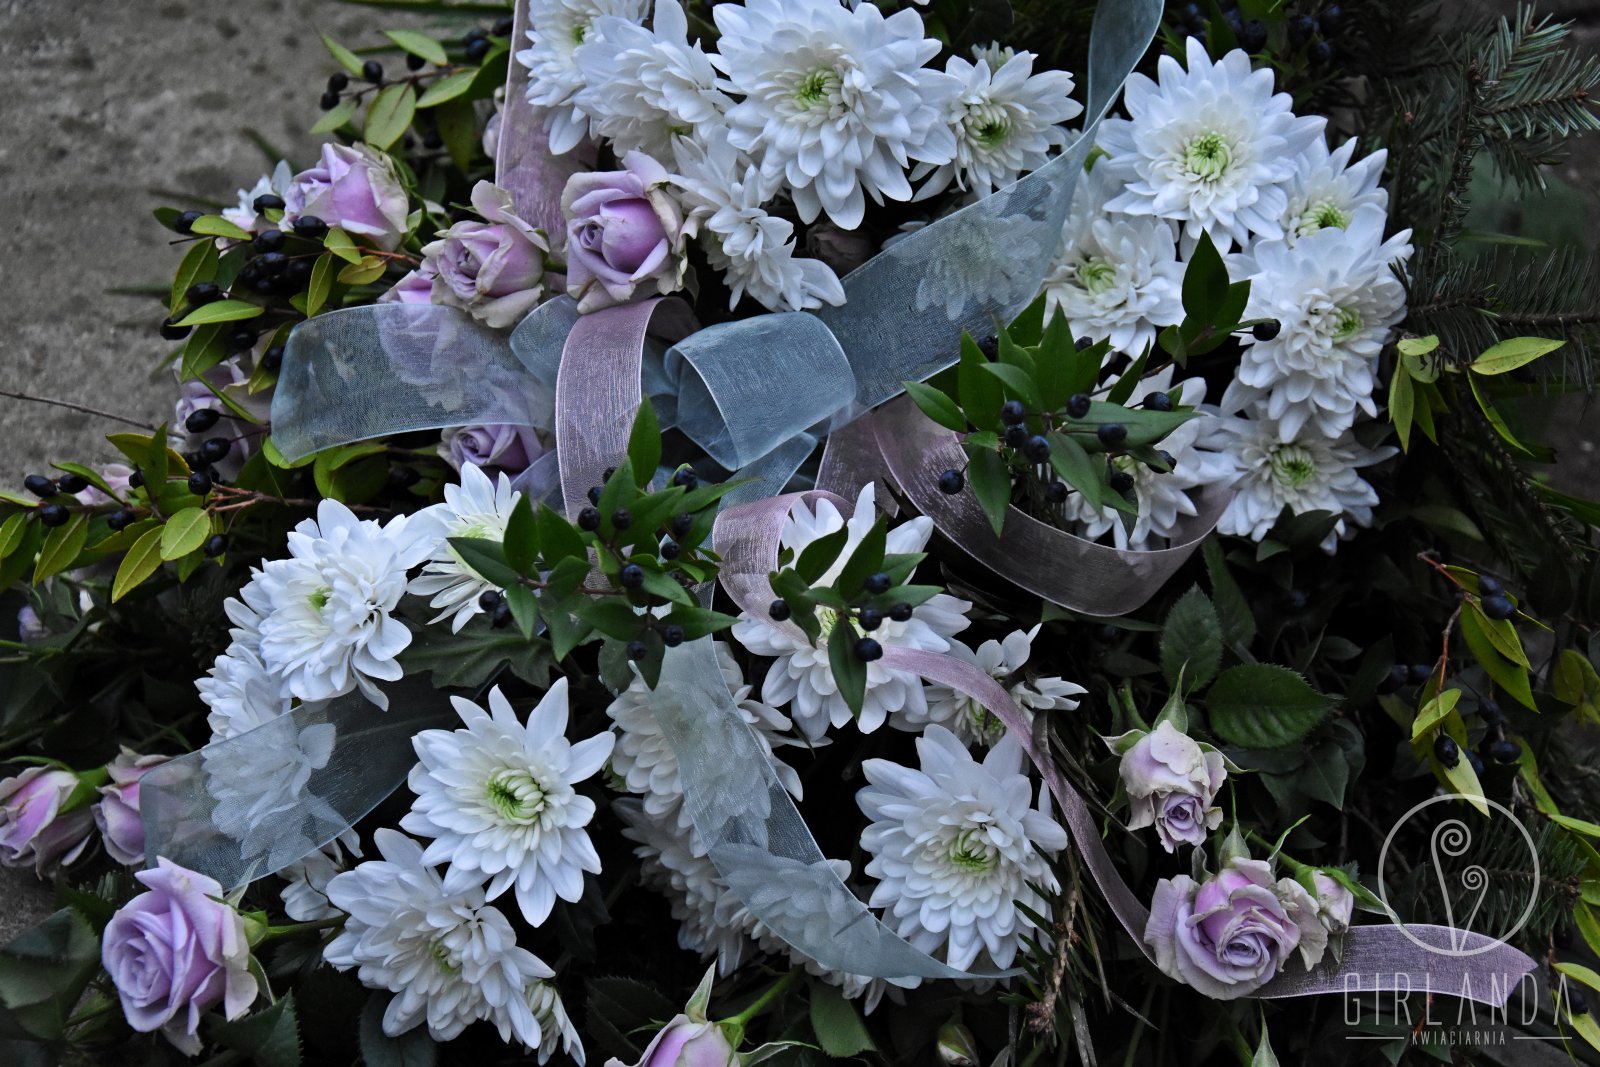 Wiązanka pogrzebowa w jasnych kolorach z kwiaciarni internetowej Girlanda